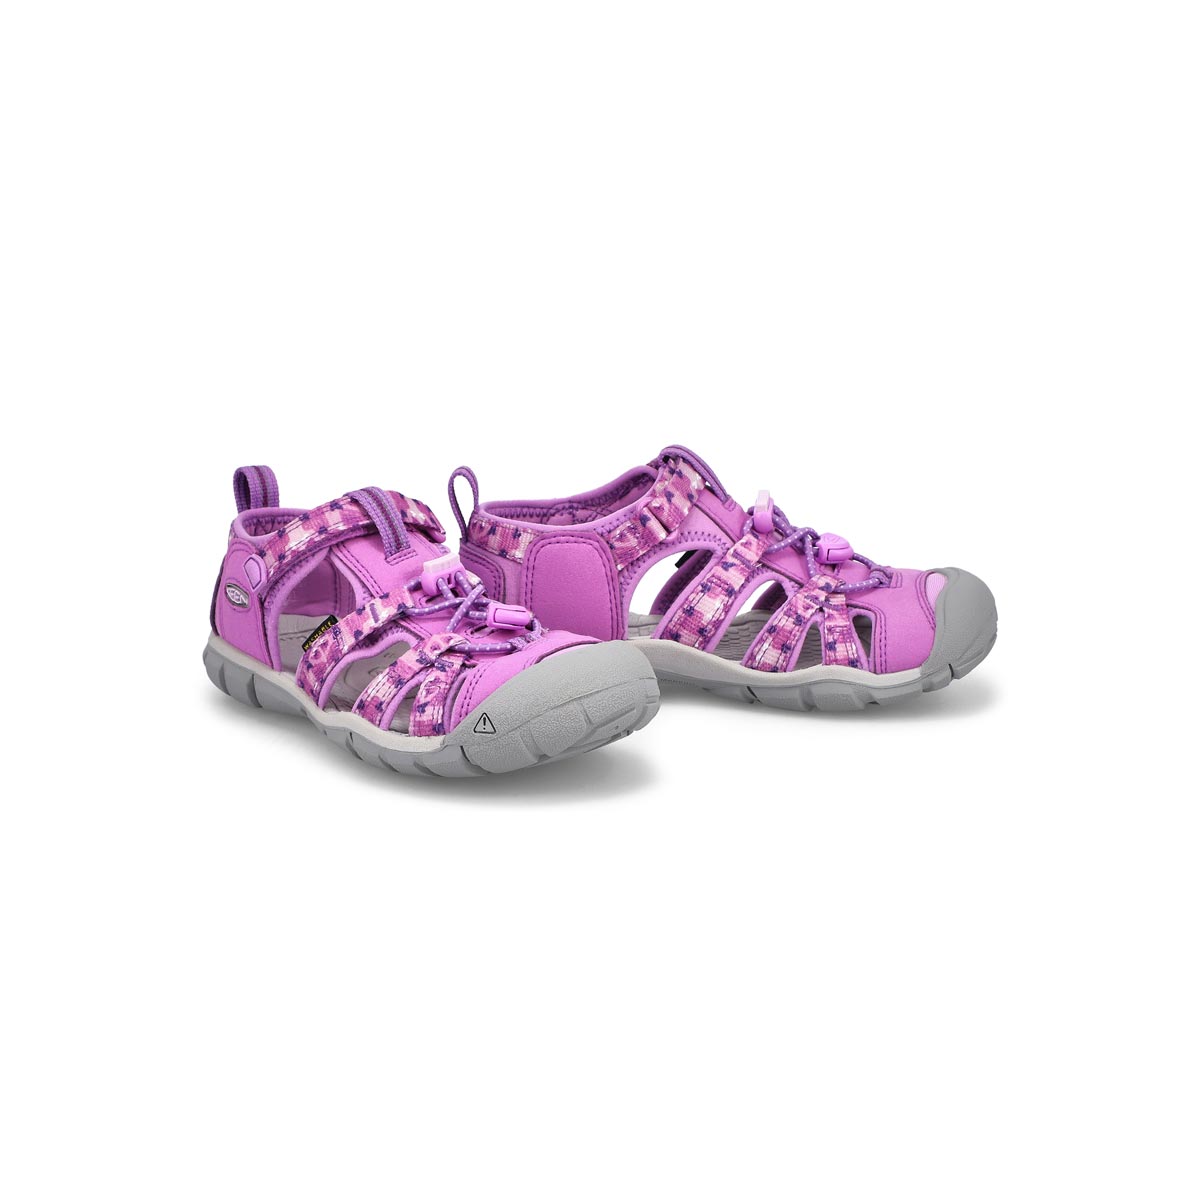 Sandale sport SeacampIICNX violet/lavande bébé